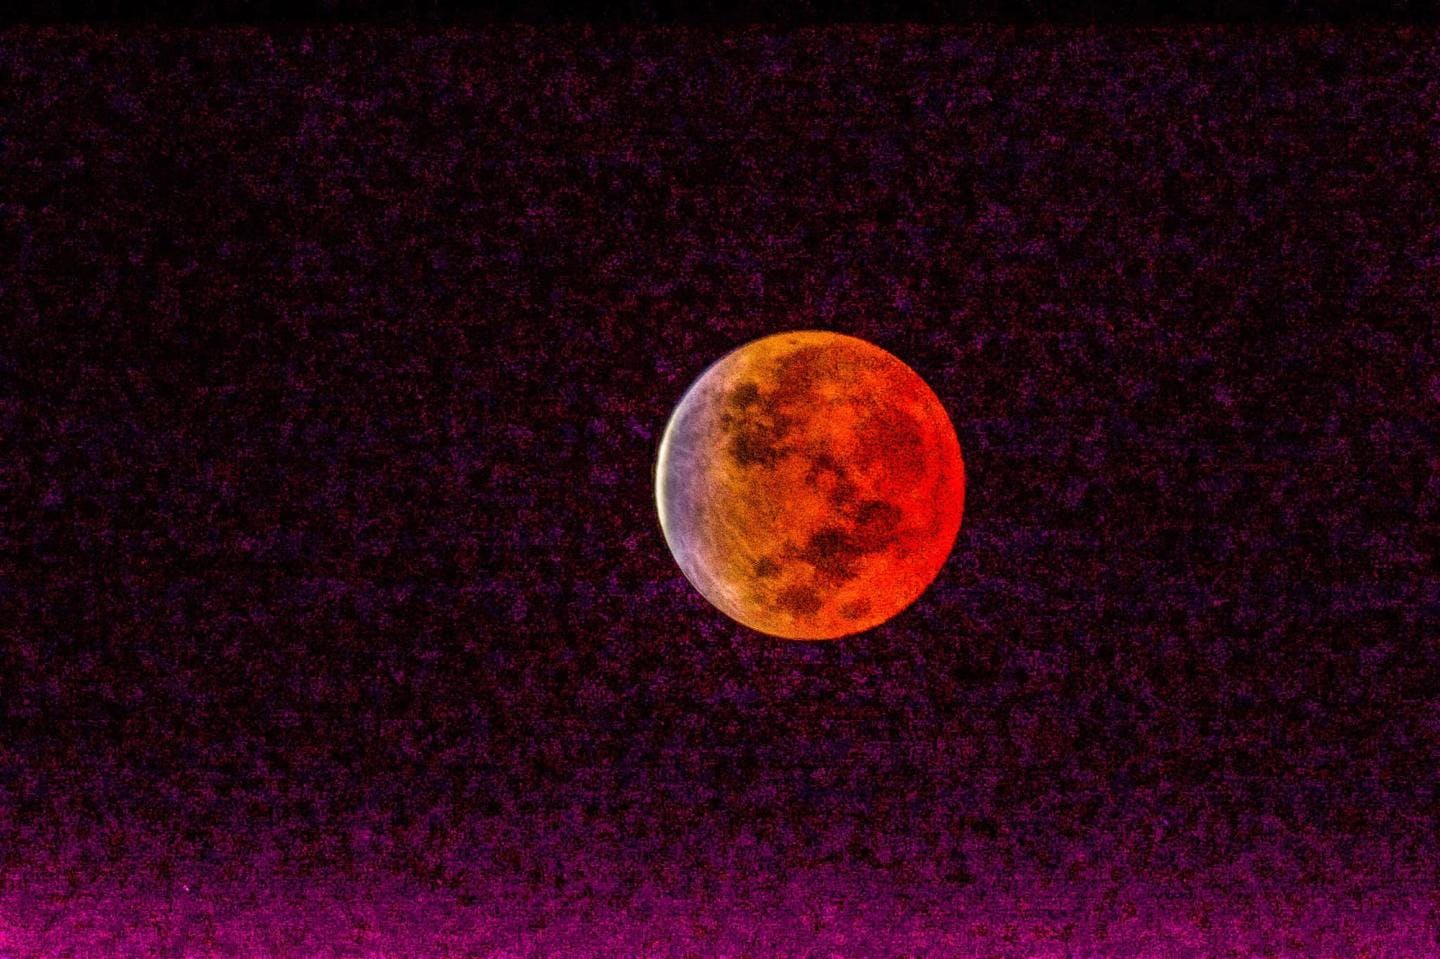 The moon turned red. Photo: Jesper Rosenmai